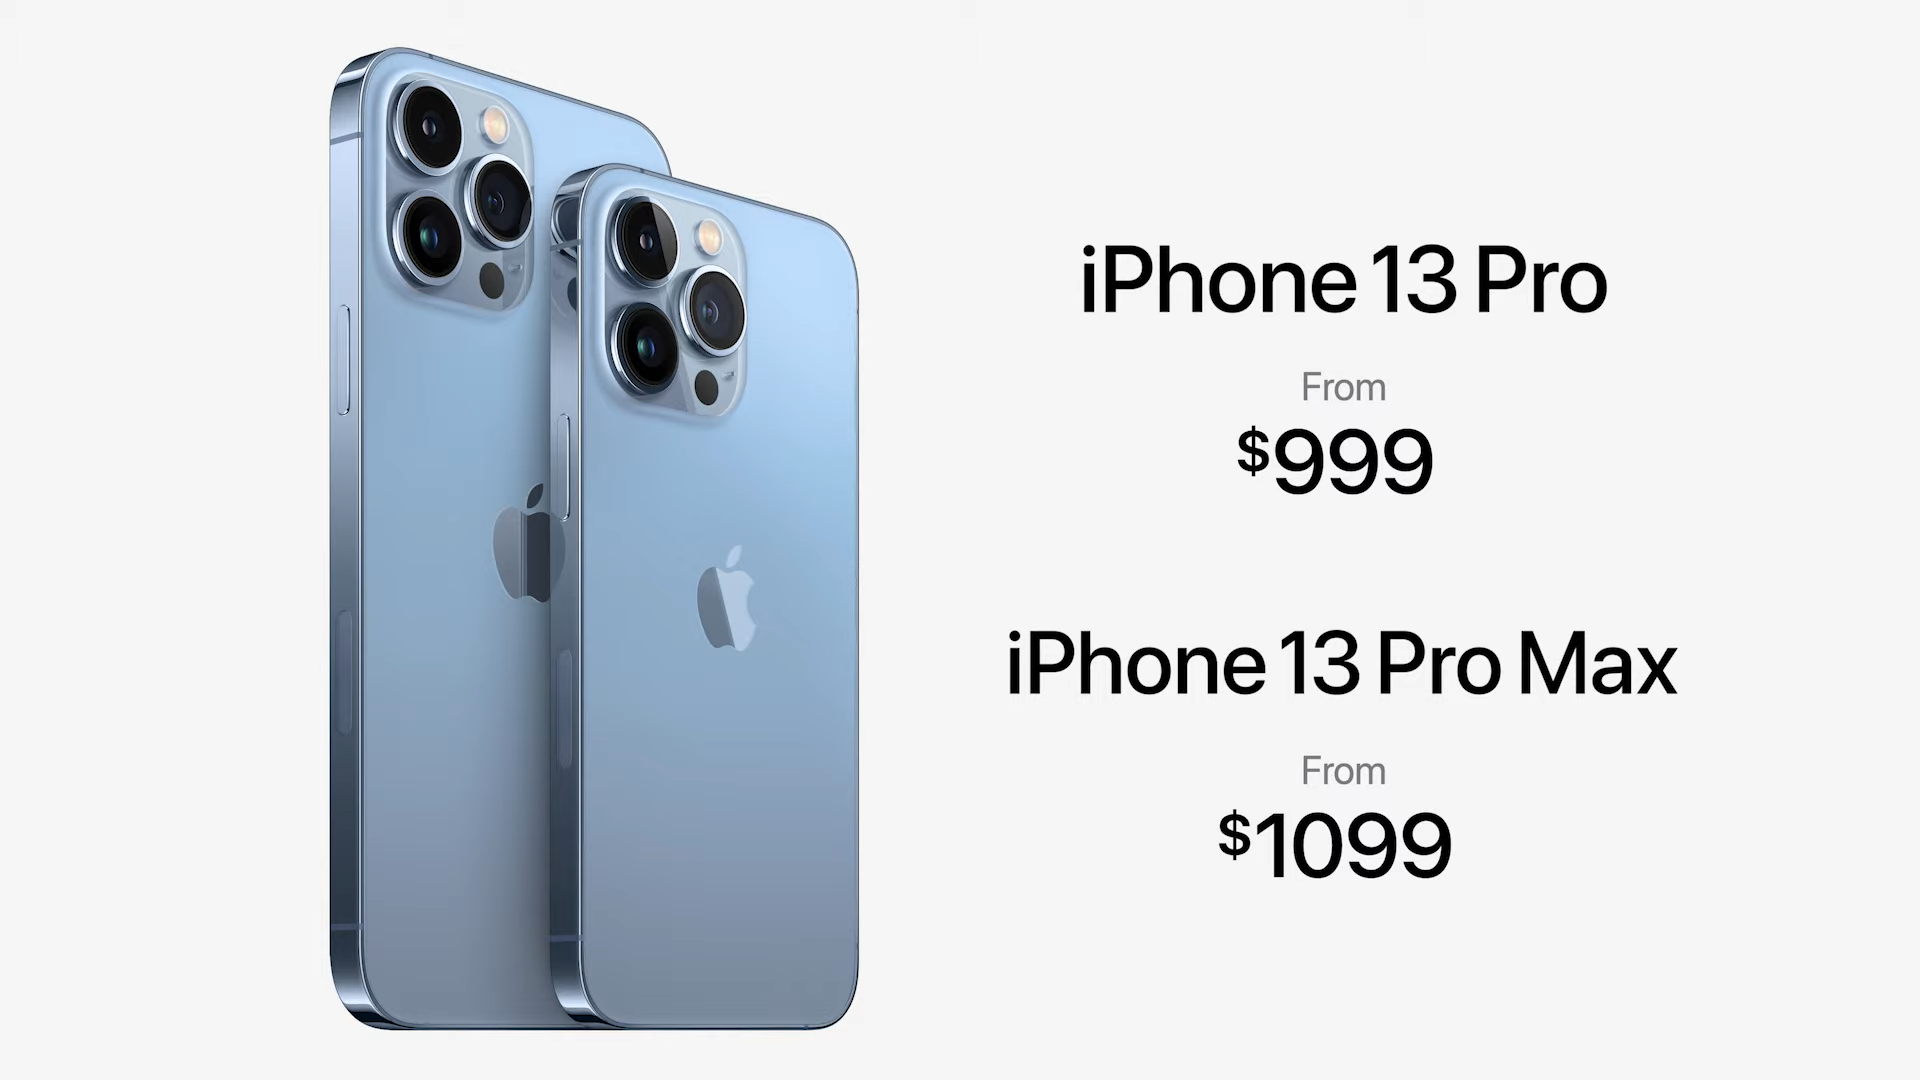 В прошлом году камеры iPhone 12 Pro и 12 Pro Max получили небольшие функциональные различия Судя по всему, Apple пересмотрела свой подход к позиционированию моделей, поэтому прошки этого года оснащены идентичными камерами и одинаковым набором функций